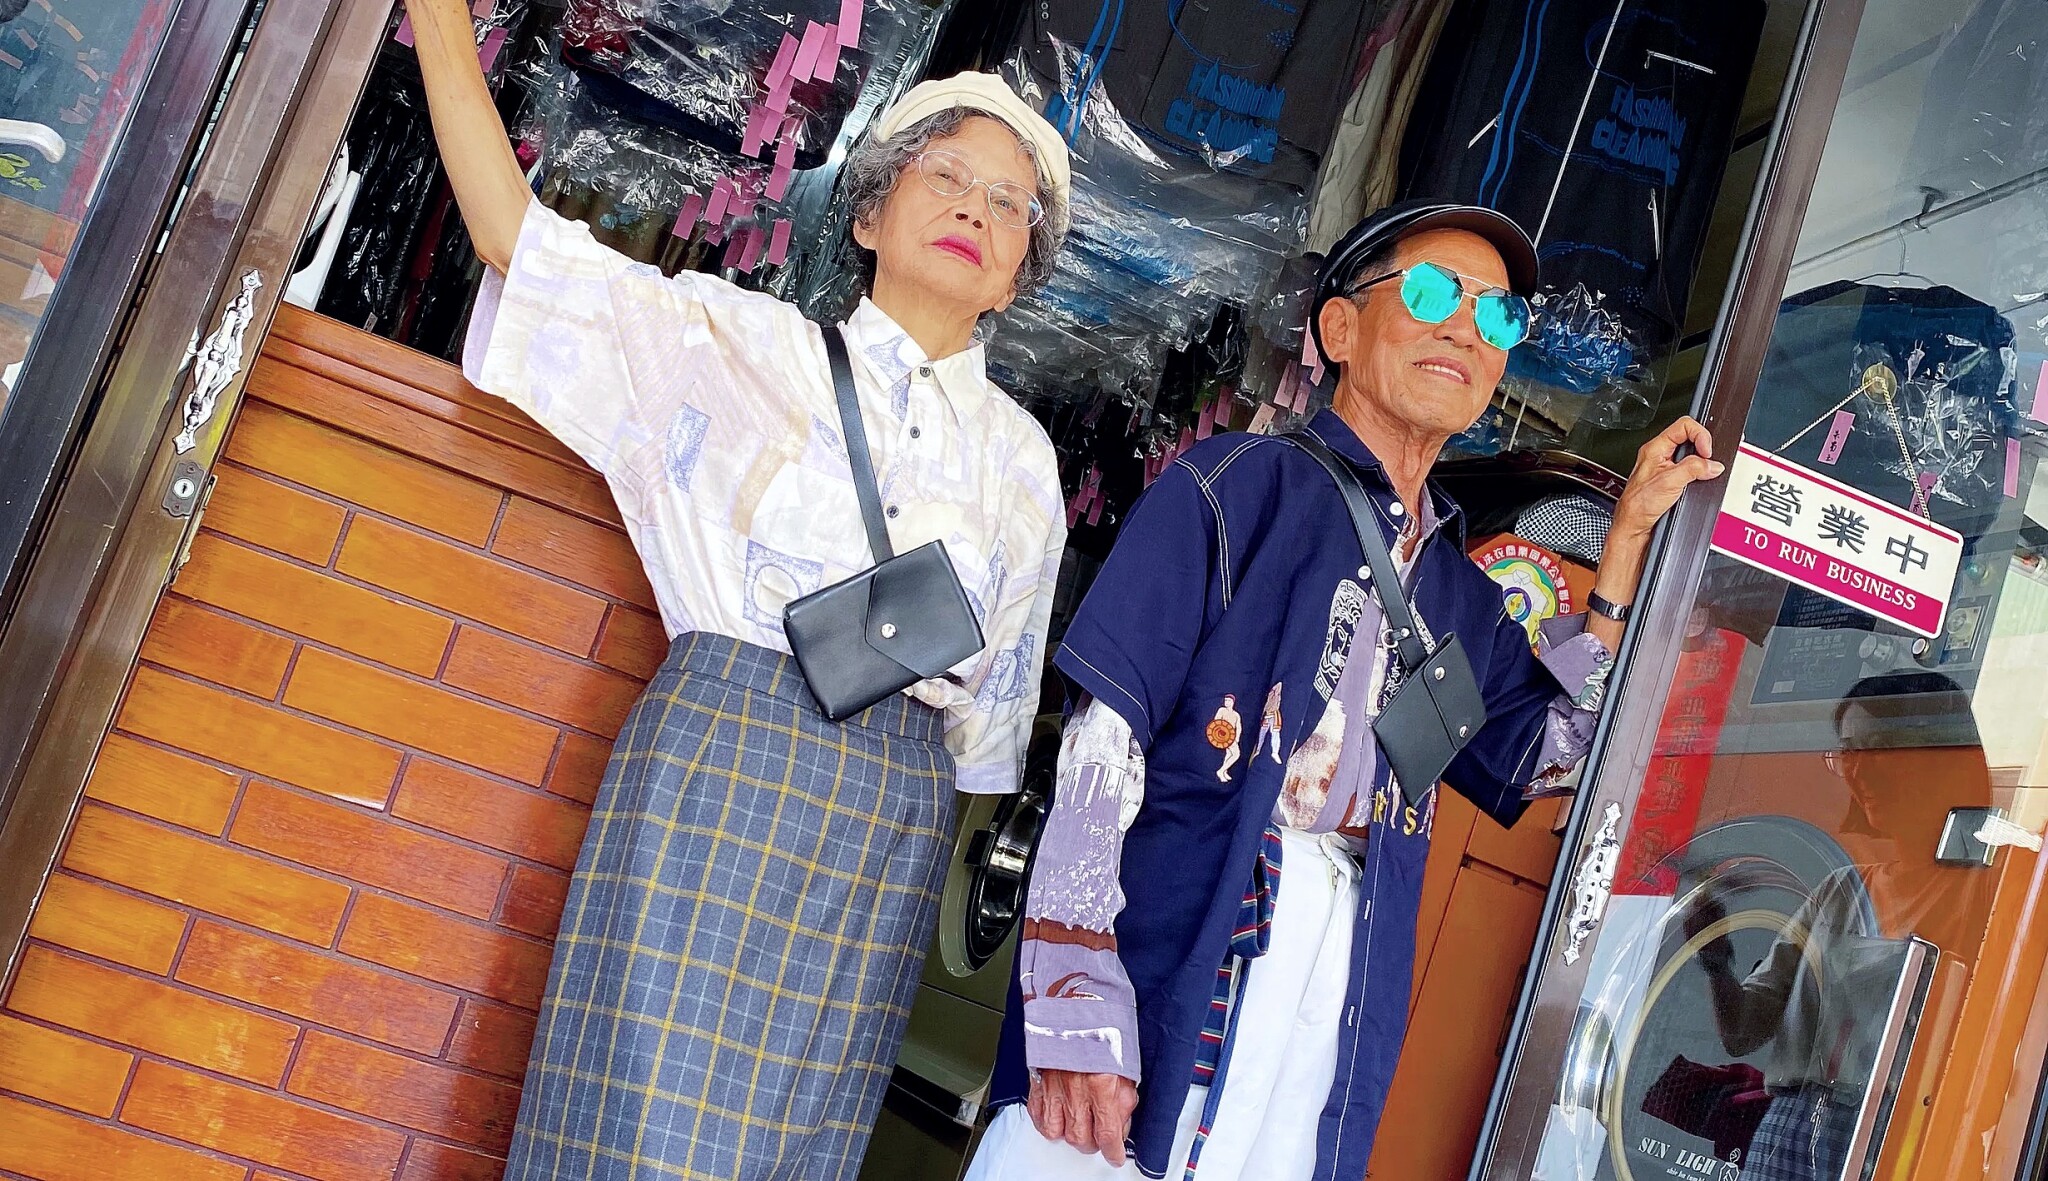 Věk je jenom číslo. Důchodci z tchajwanské čistírny se stali módními ikonami Instagramu